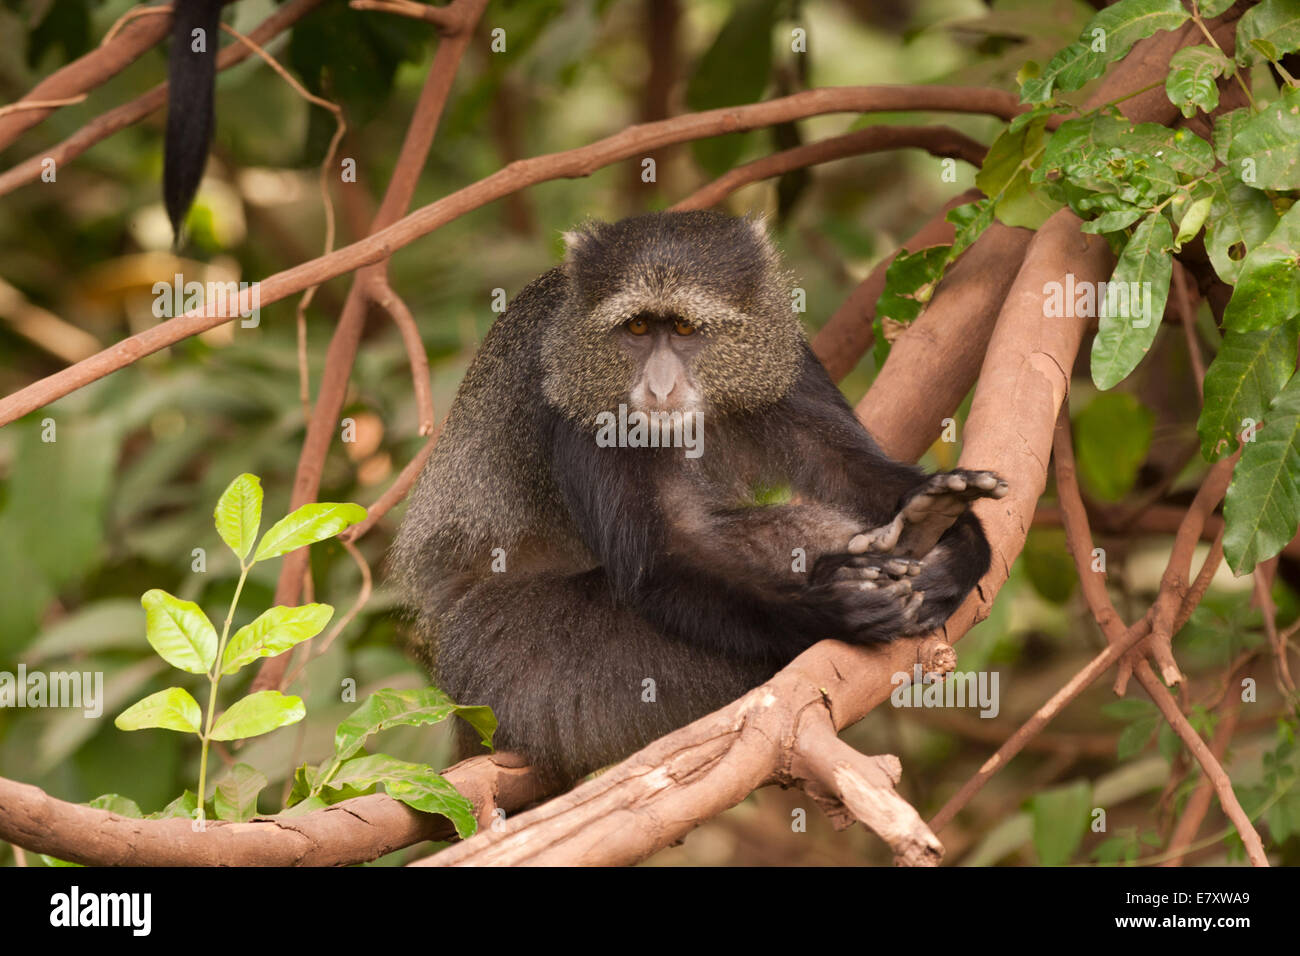 Blue Monkey, o samango monkey, (Cercopithecus mitis) in una struttura ad albero. Questa scimmia vive in truppe, rinviando ad un maschio dominante (visto Foto Stock